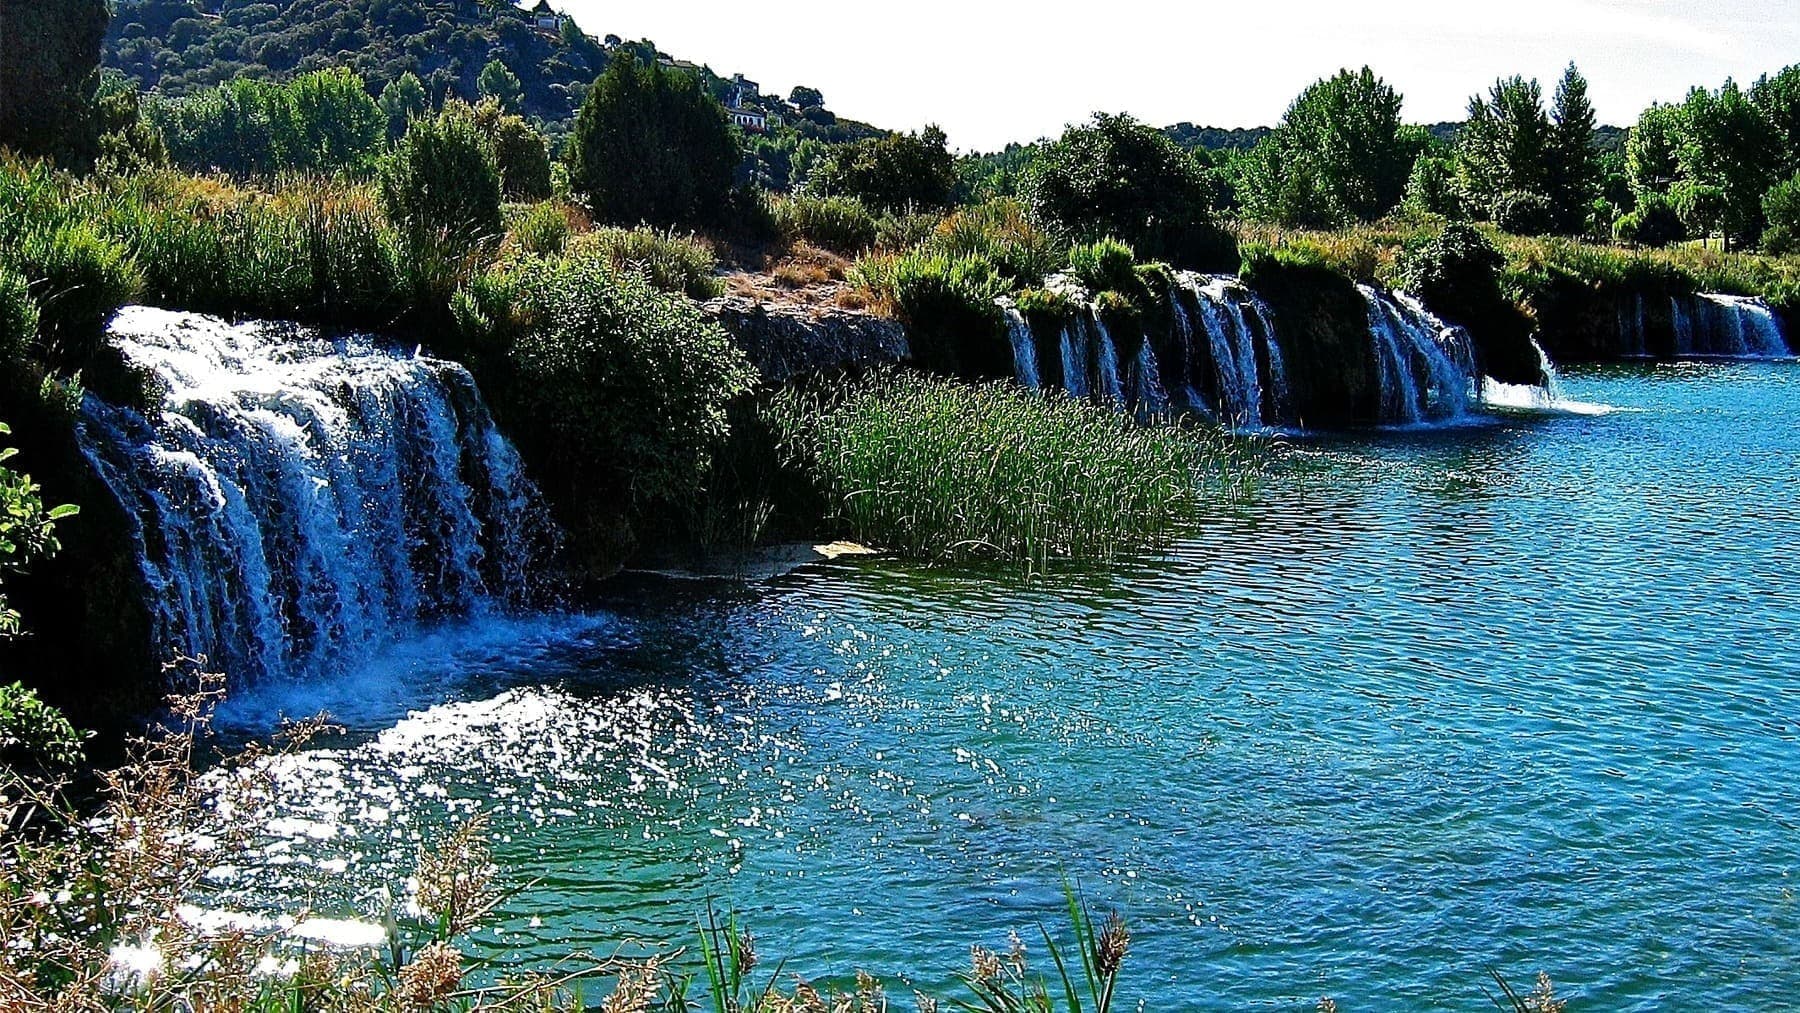 El paraíso interior más desconocido de España con aguas turquesas